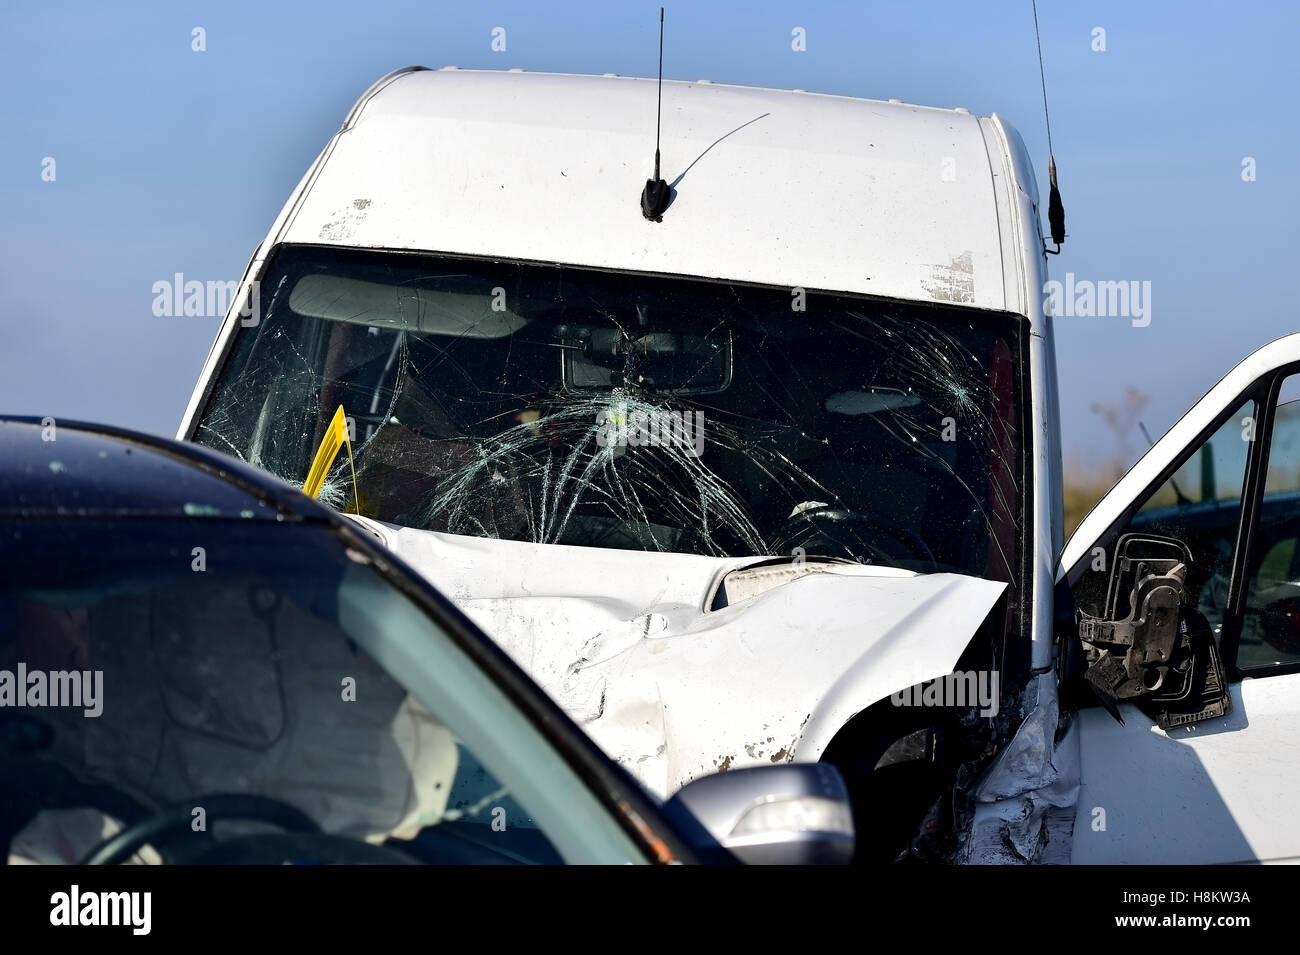 Détail de voitures endommagées après accident grave Banque D'Images